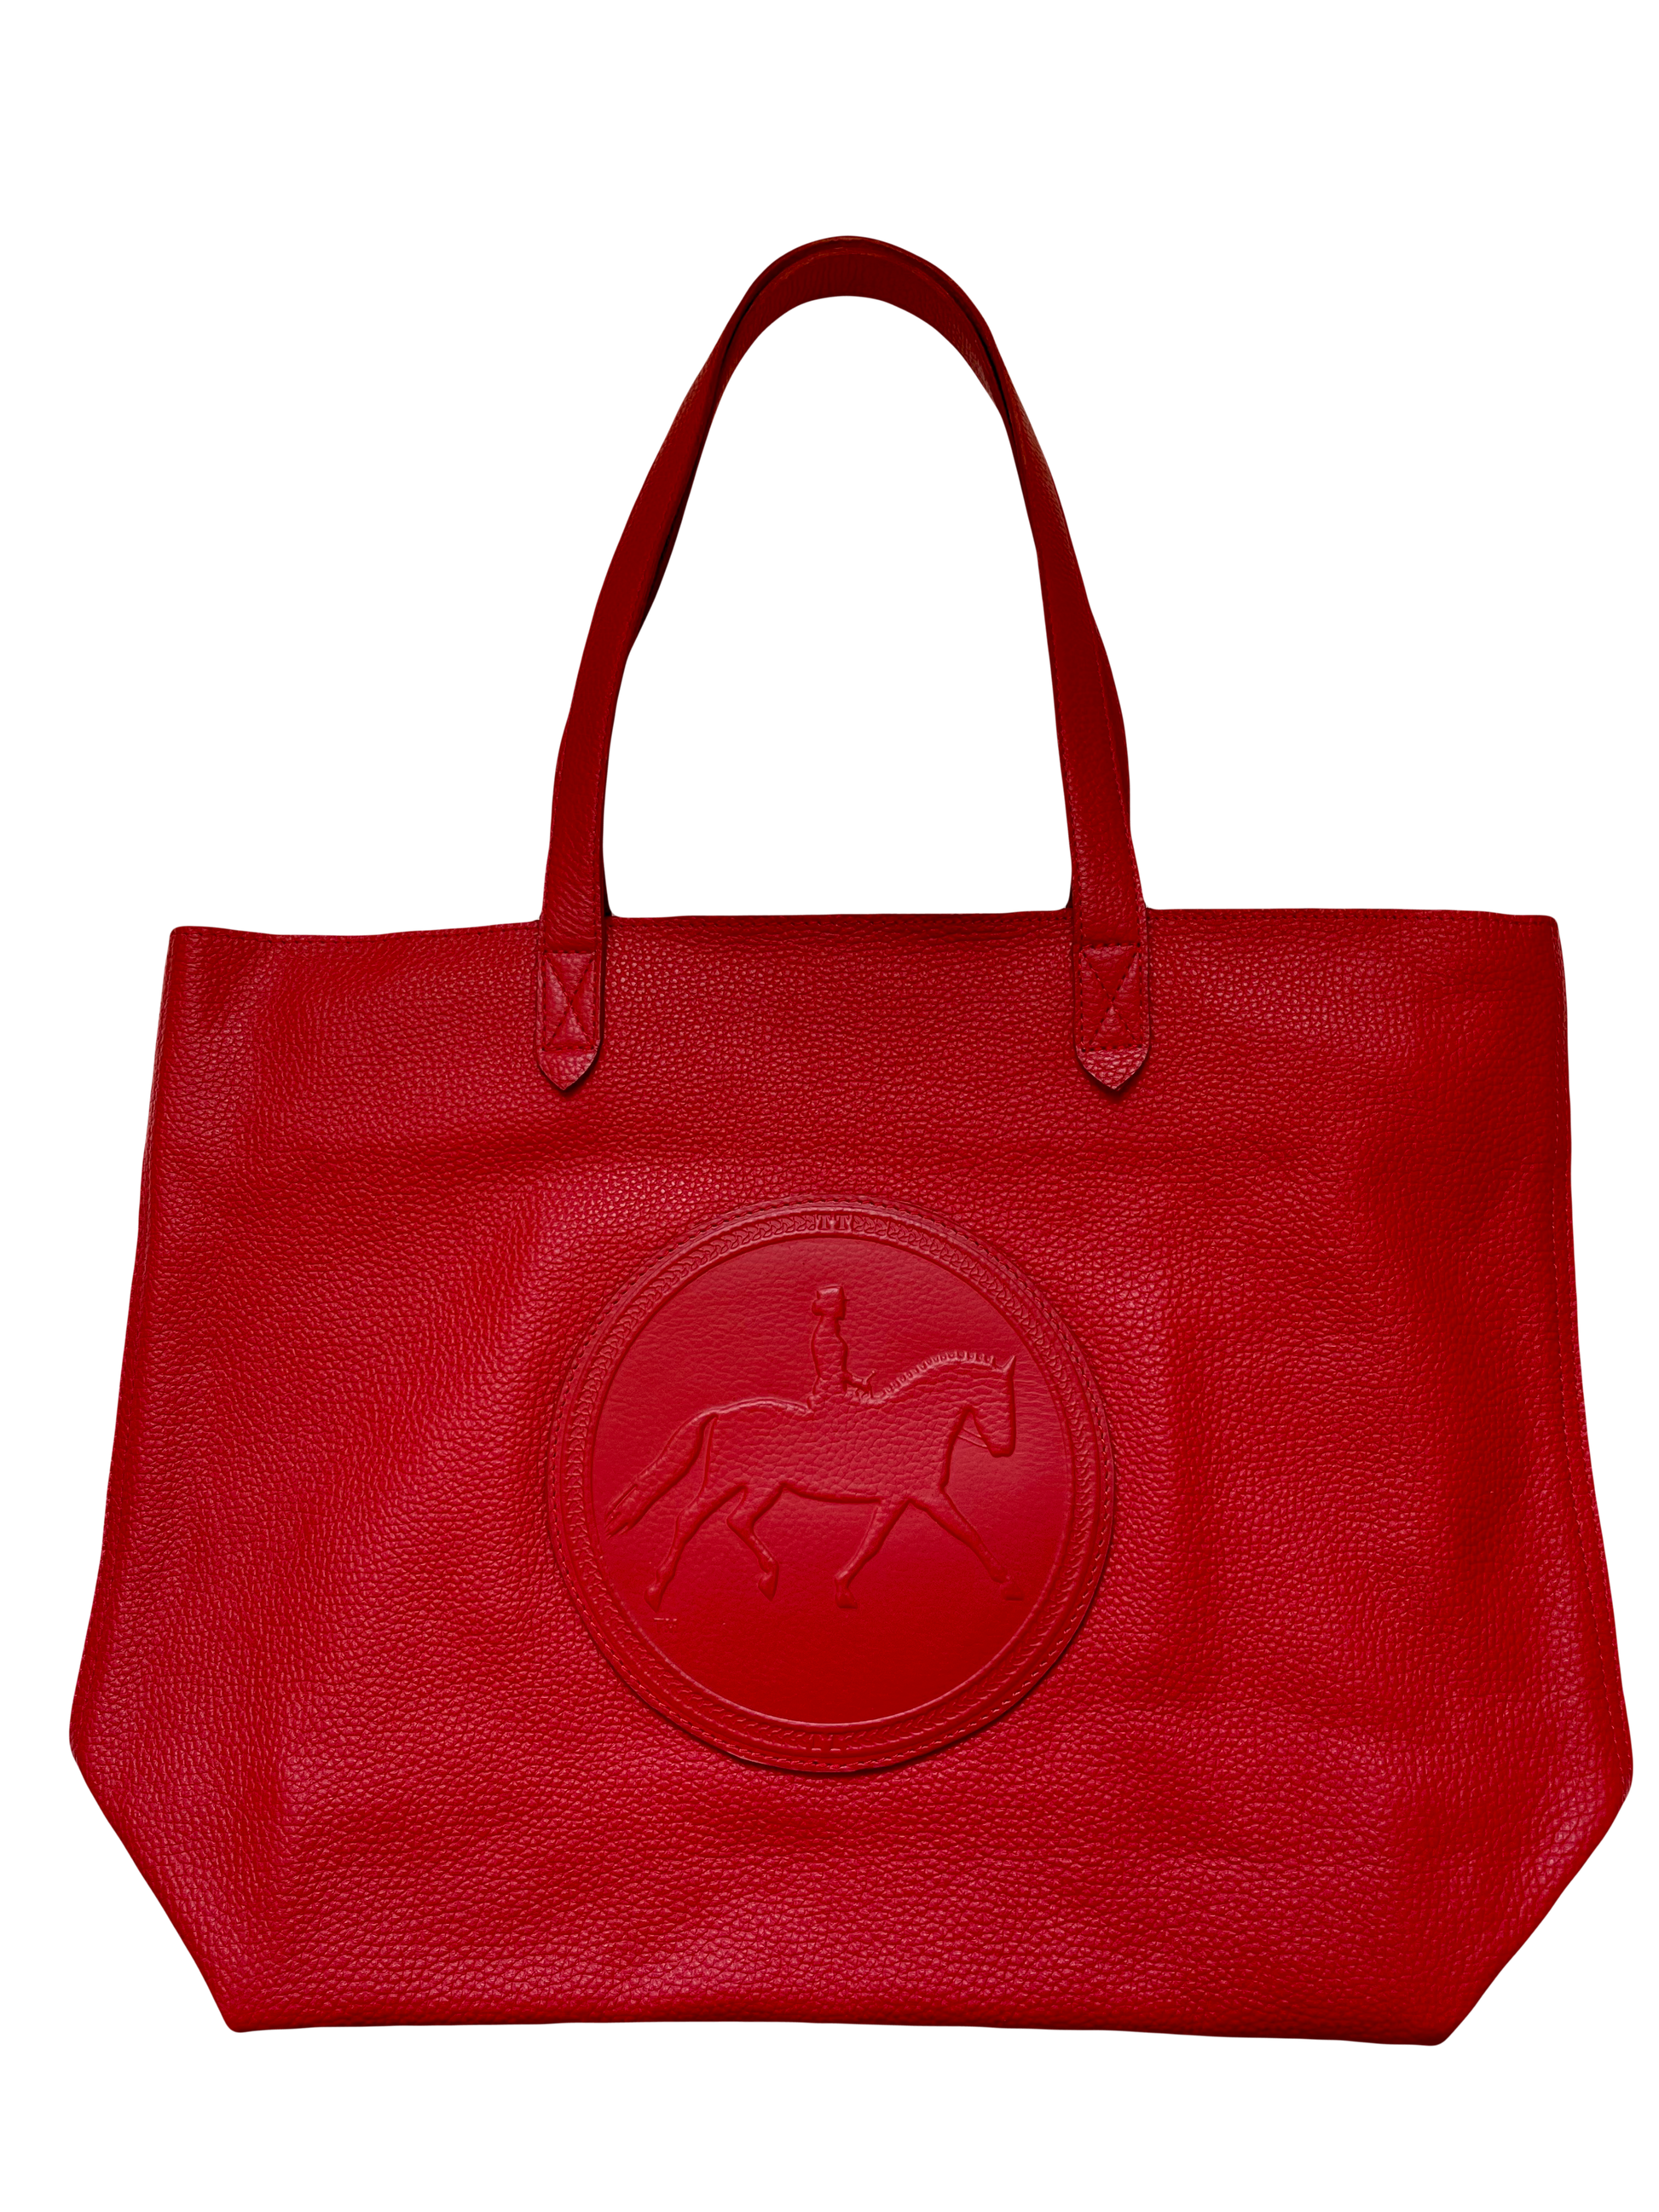 Tucker Tweed Equestrian Leather Handbags Dressage Red Sonoma Shoulder Bag: Dressage